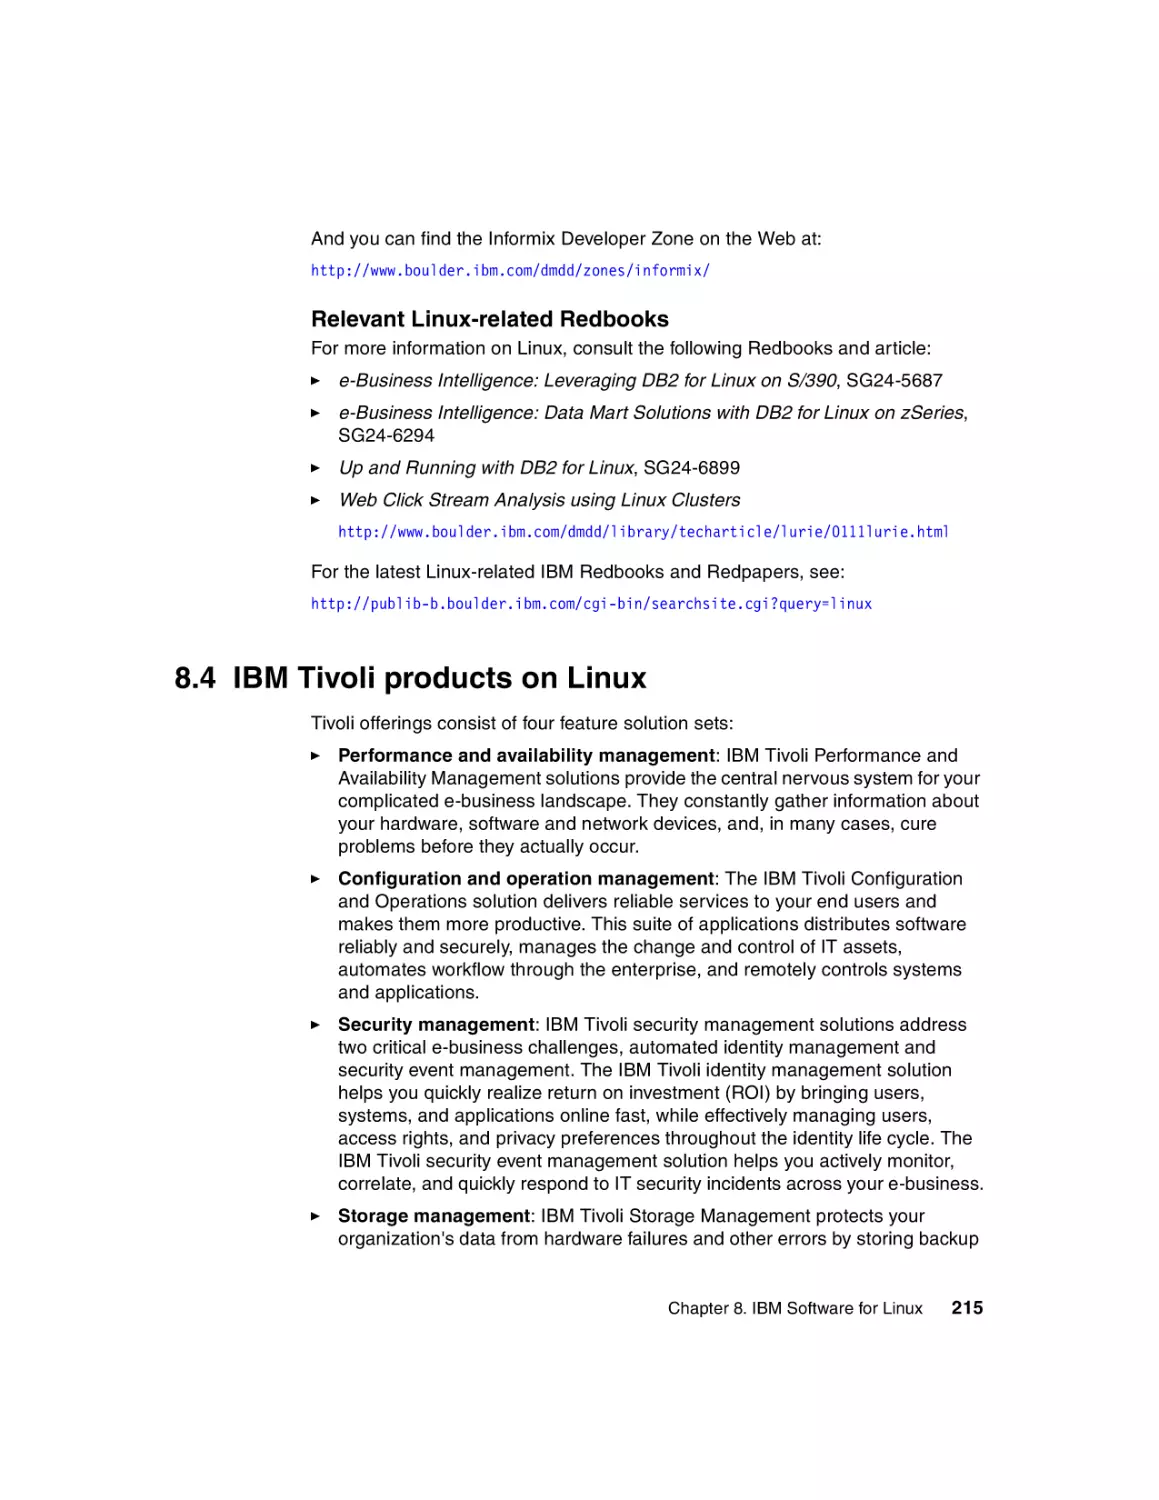 8.4 IBM Tivoli products on Linux